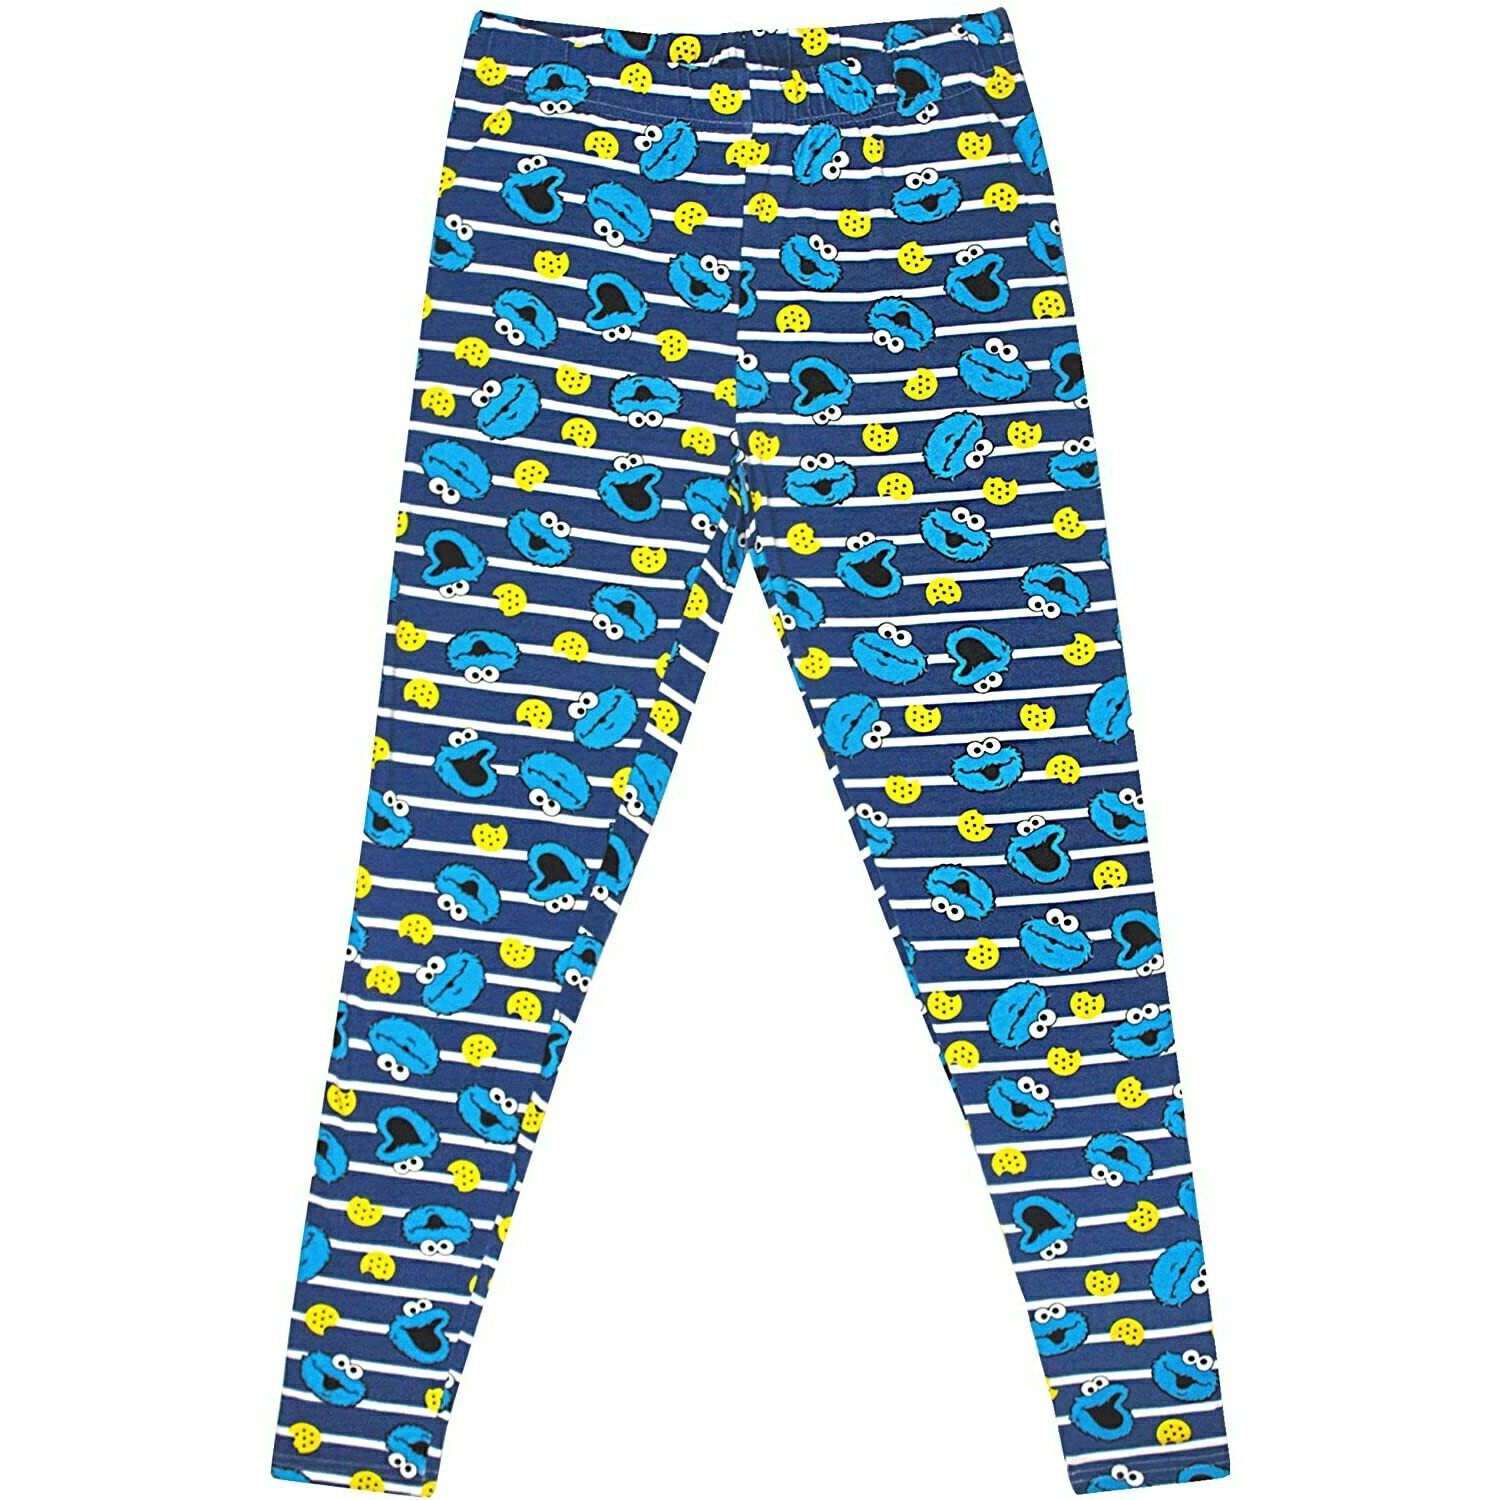 (セサミストリート) Sesame Street オフィシャル商品 レディース クッキーモンスター パジャマ 半袖 ズボン 上下セット 【海外通販】